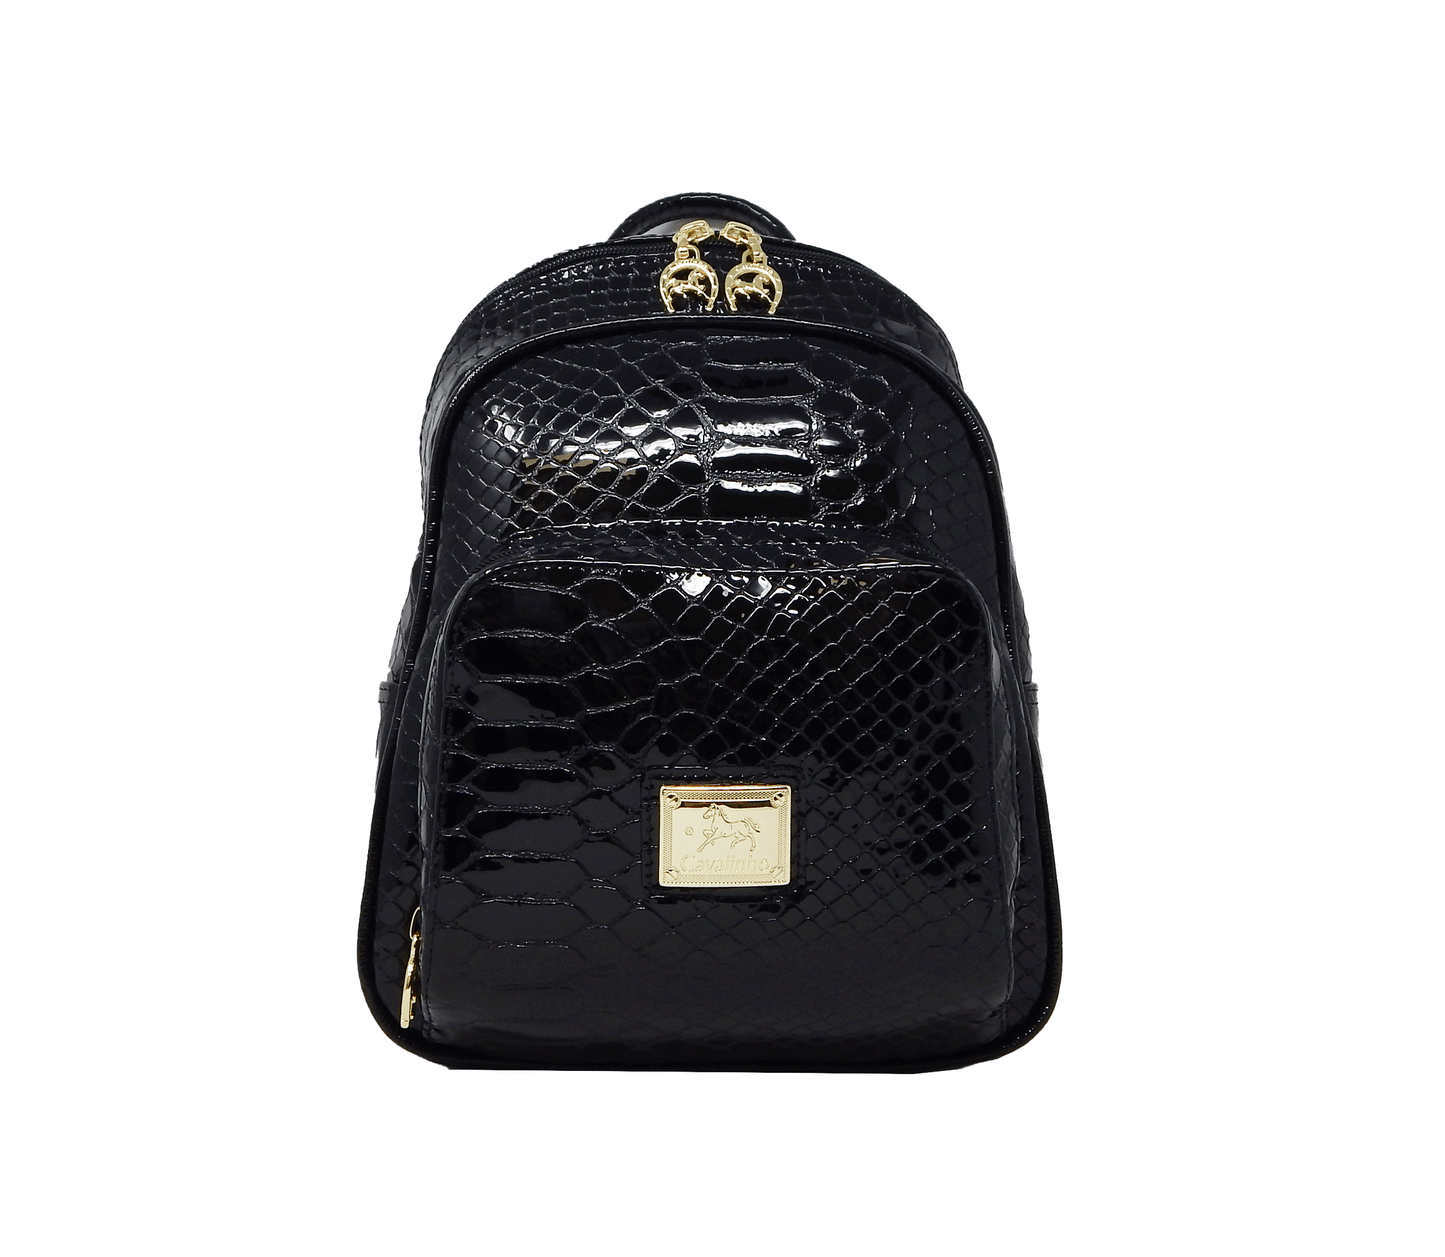 #color_ Black | Cavalinho Gallop Patent Leather Backpack - Black - 18170525.01_1